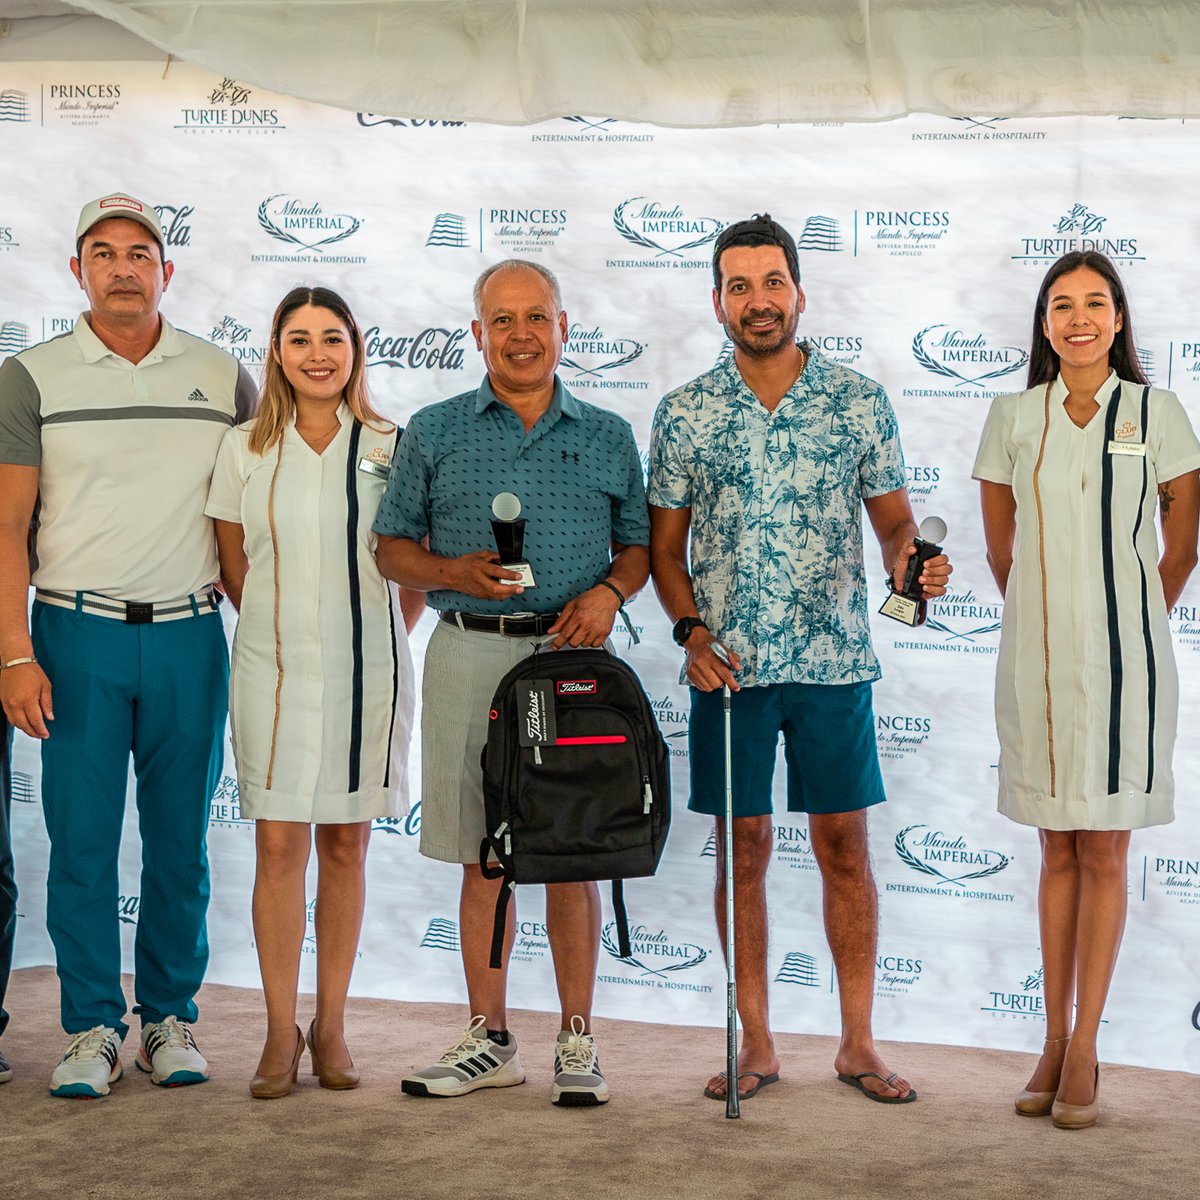 Celebramos nuestro Torneo de Inauguración de Casa Club el pasado 20 de mayo en #TurtleDunesCountryClub. 🏌🏻‍♀️⛳️
¡Gracias a nuestros apreciados socios e invitados por su participación!

#MIHotelPrincess #ViveLaExperiencia #RivieraDiamanteAcapulco #MundoImperial